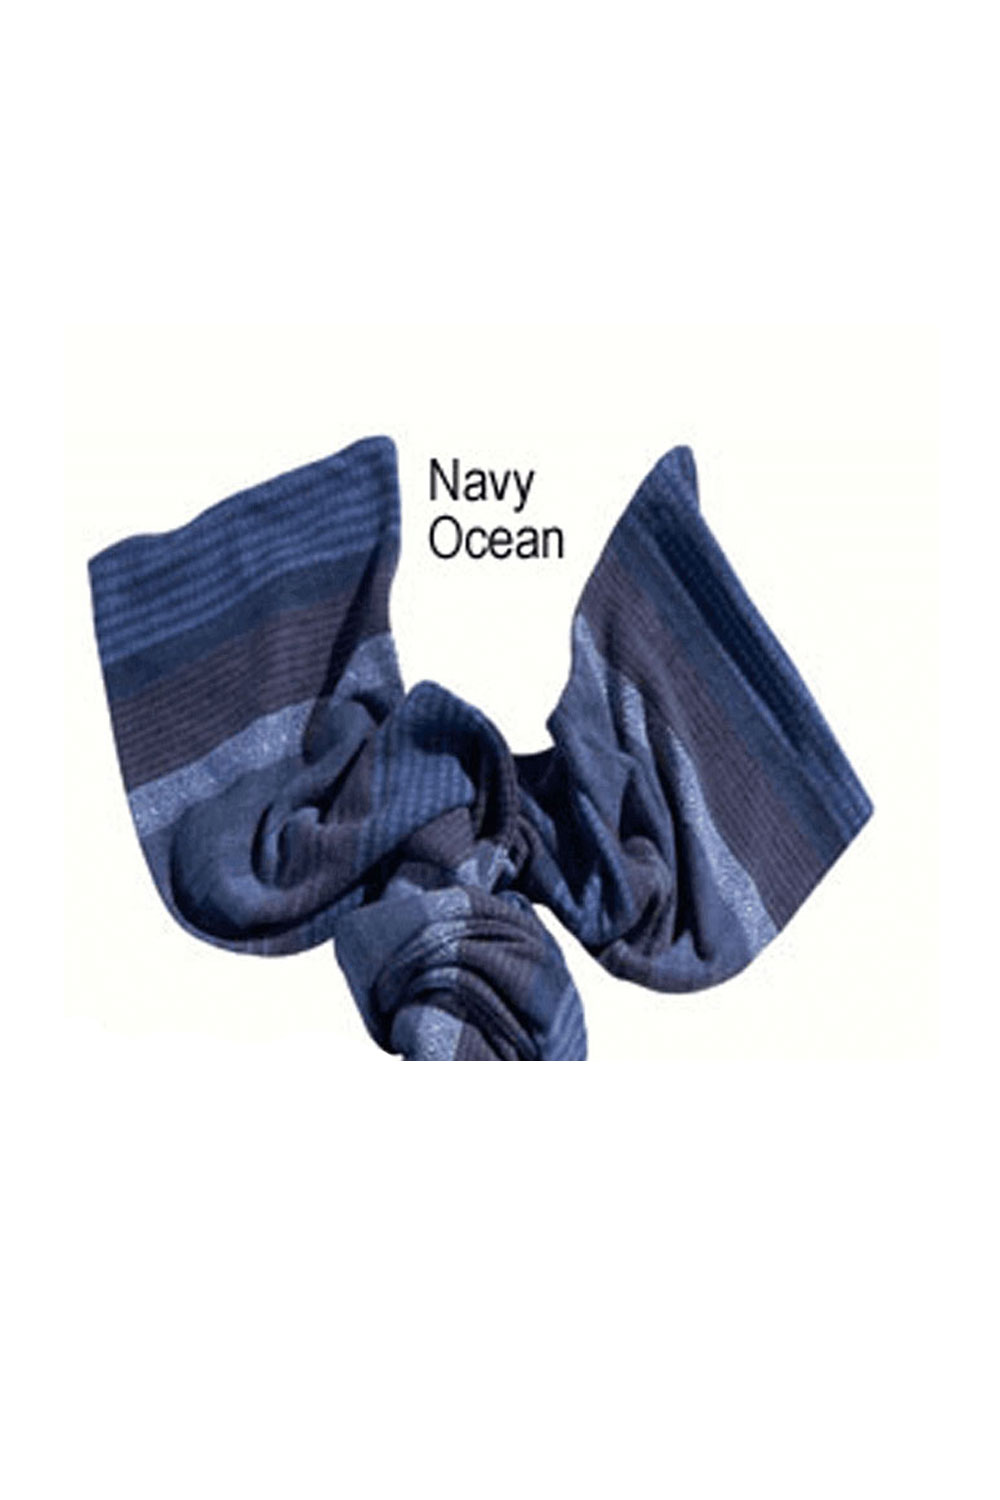 Navy/Ocean